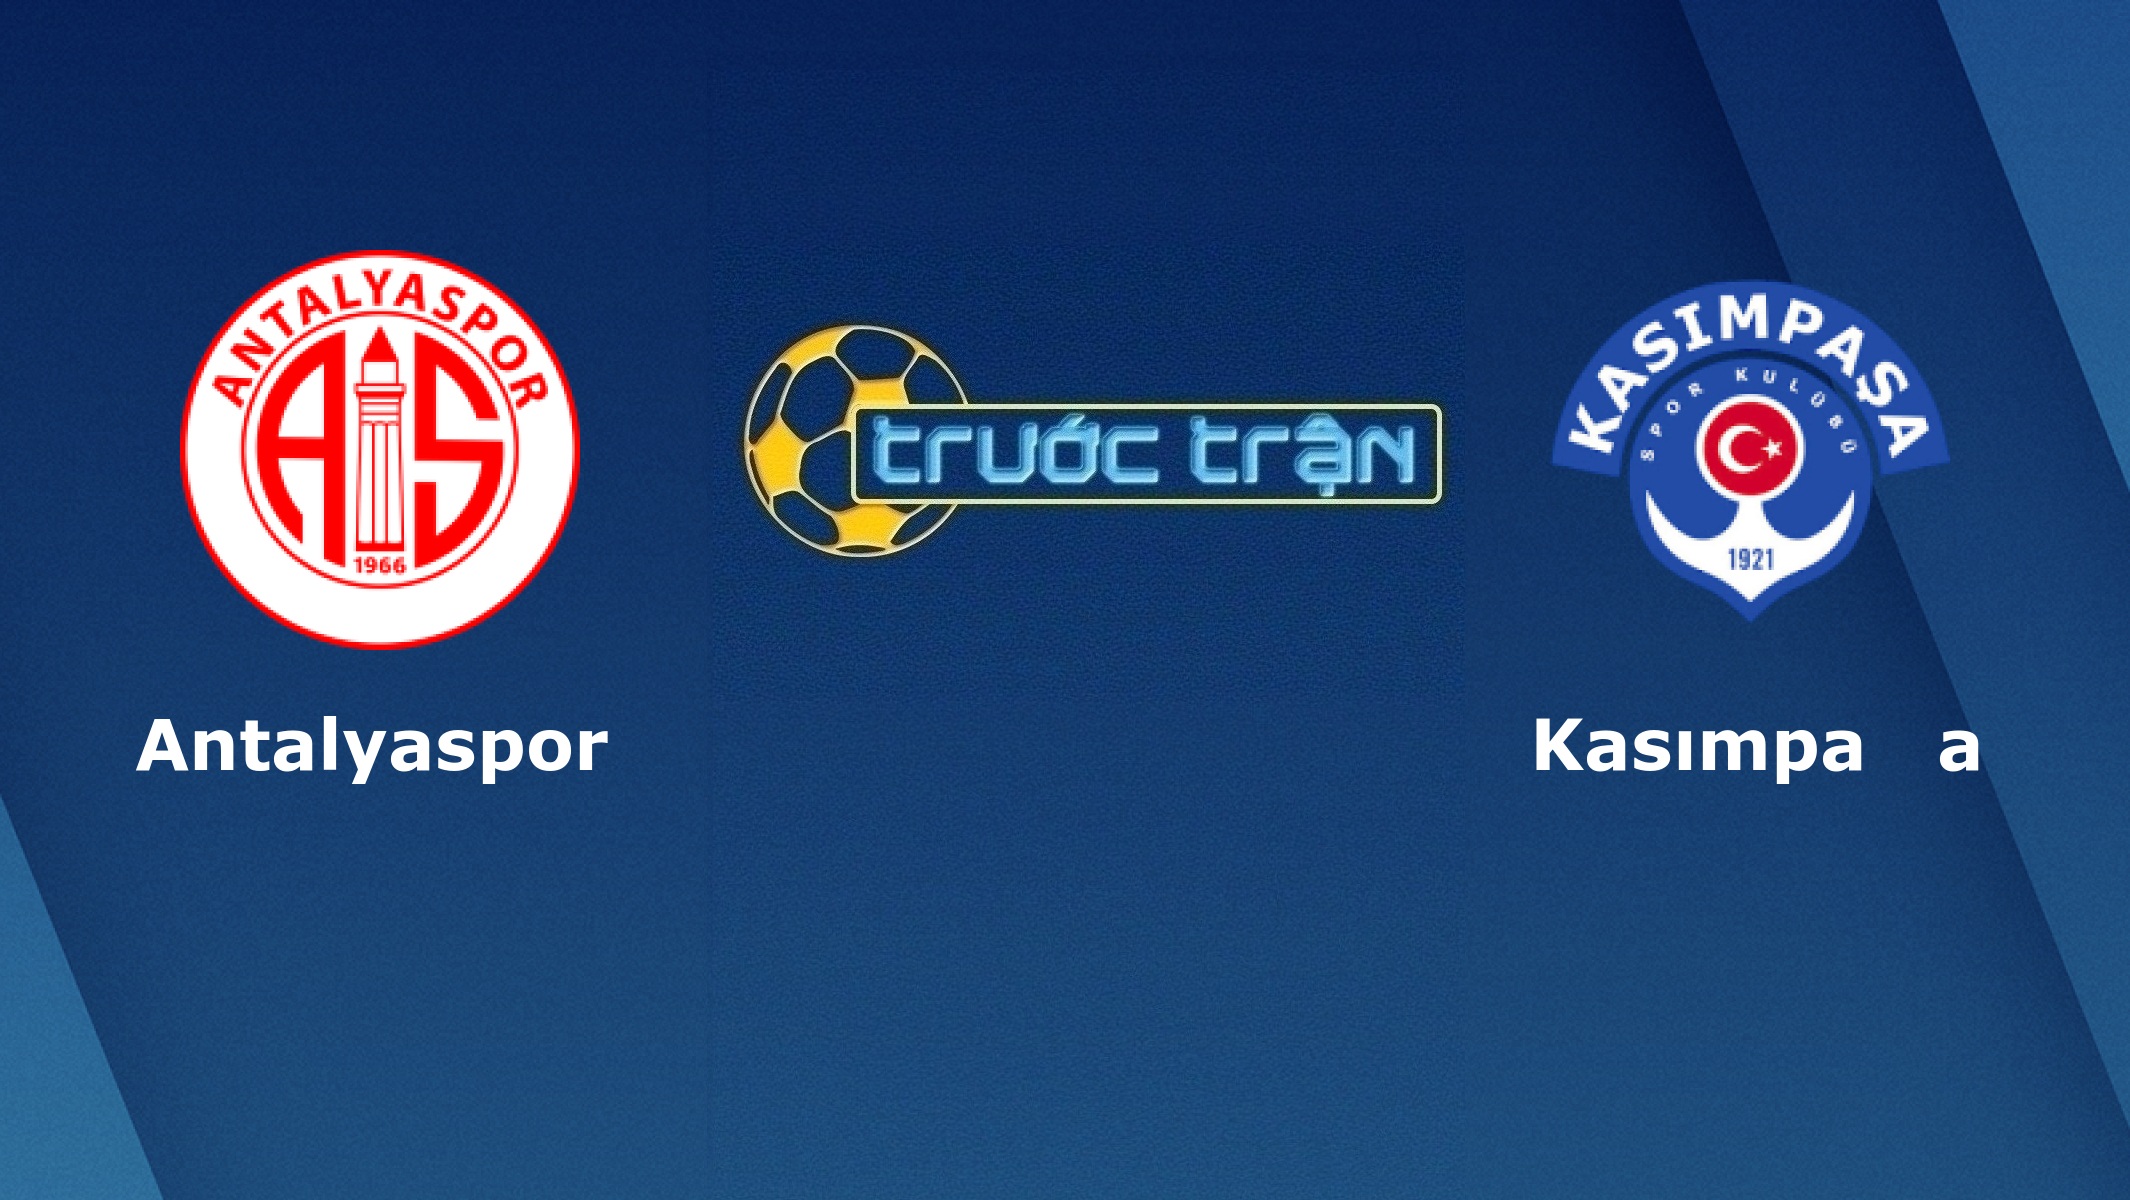 Antalyaspor vs Kasimpasa – Tip kèo bóng đá hôm nay – 18/02